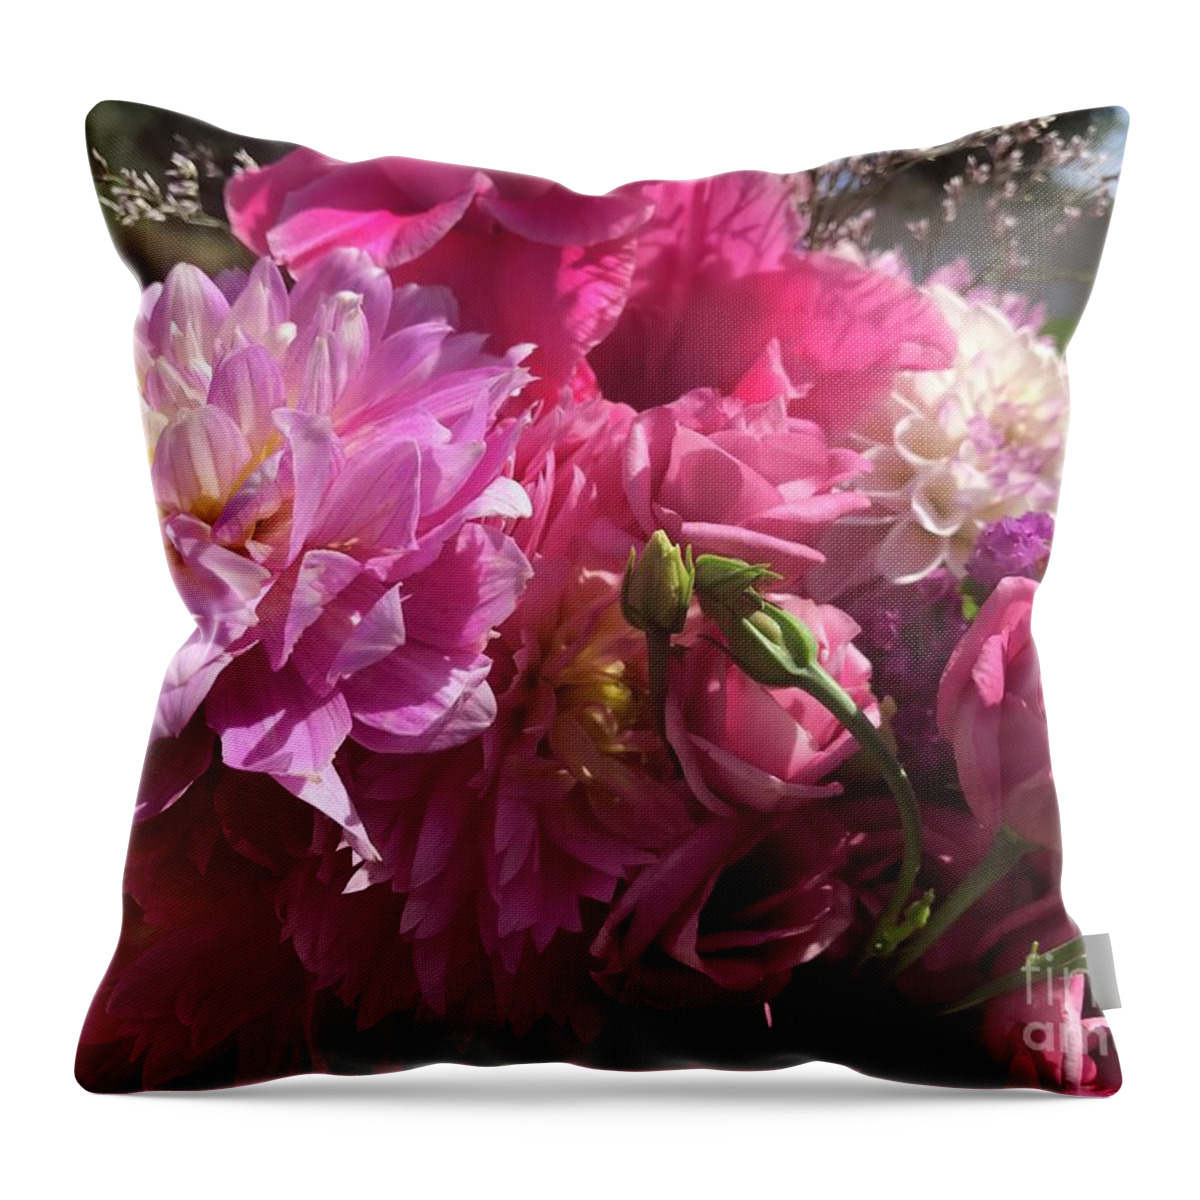 Summer Throw Pillow featuring the photograph Summer Pink Bouquet by Carol Groenen